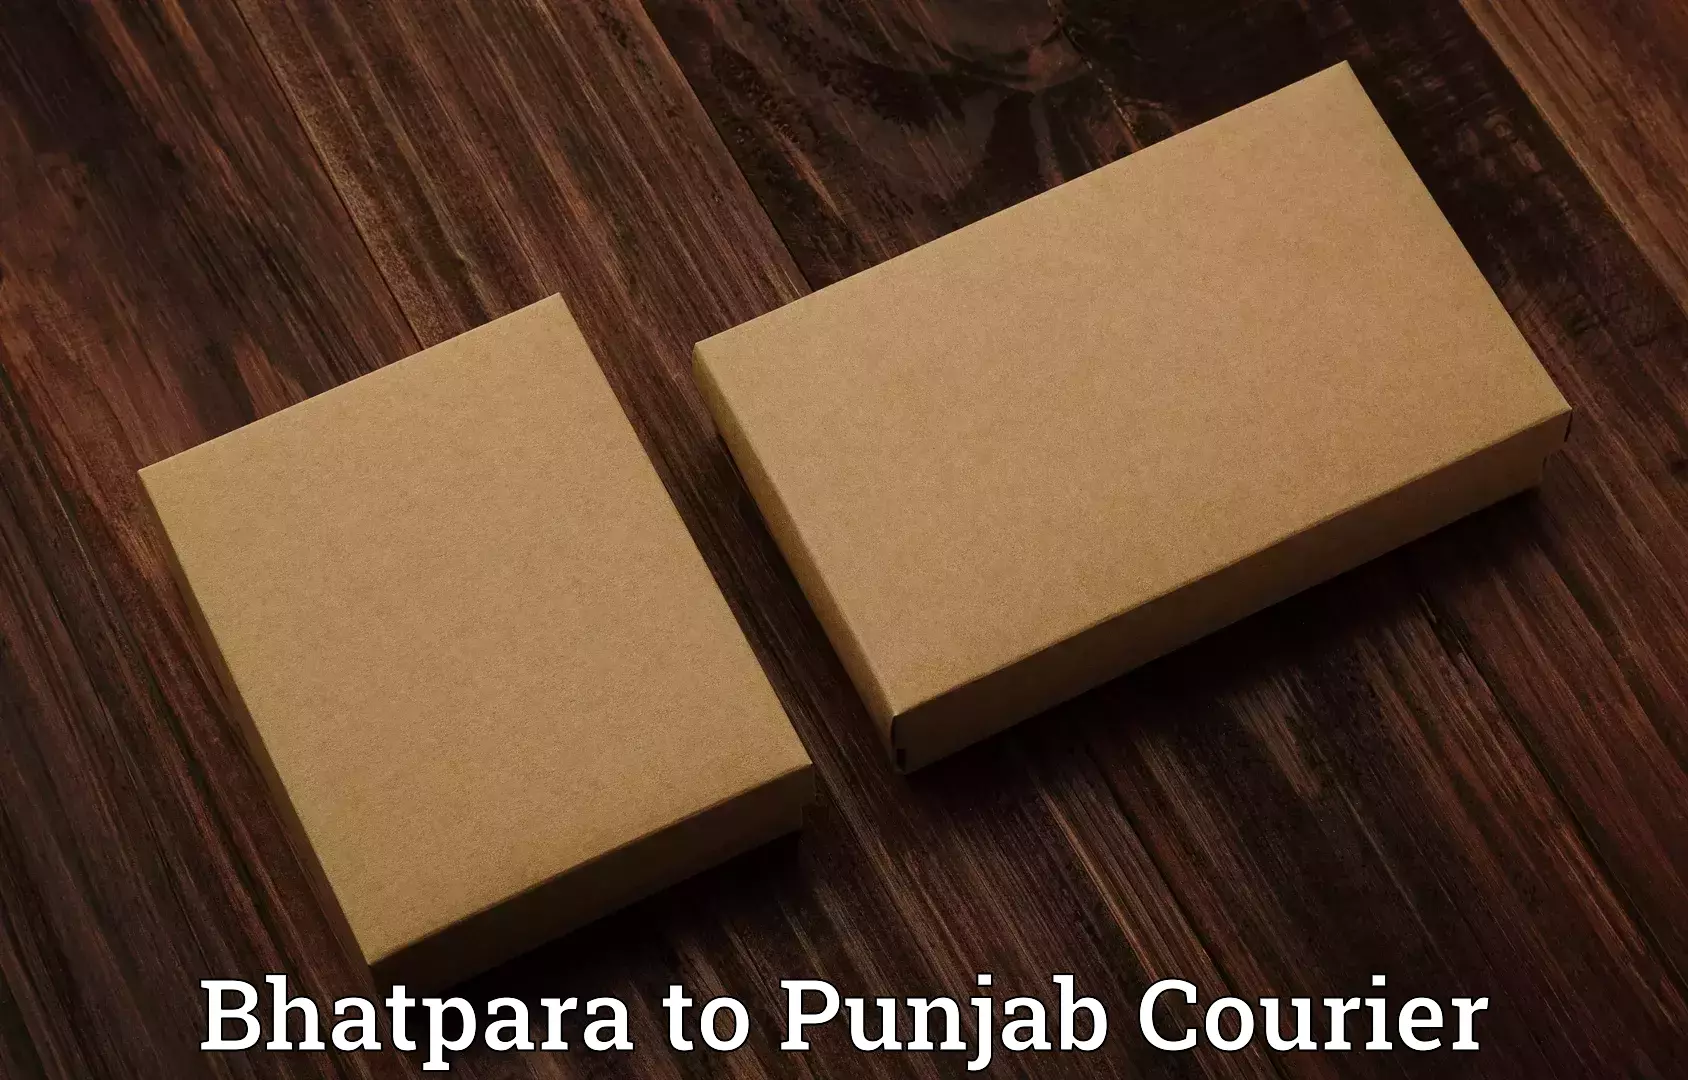 Luggage transport consulting Bhatpara to Bathinda